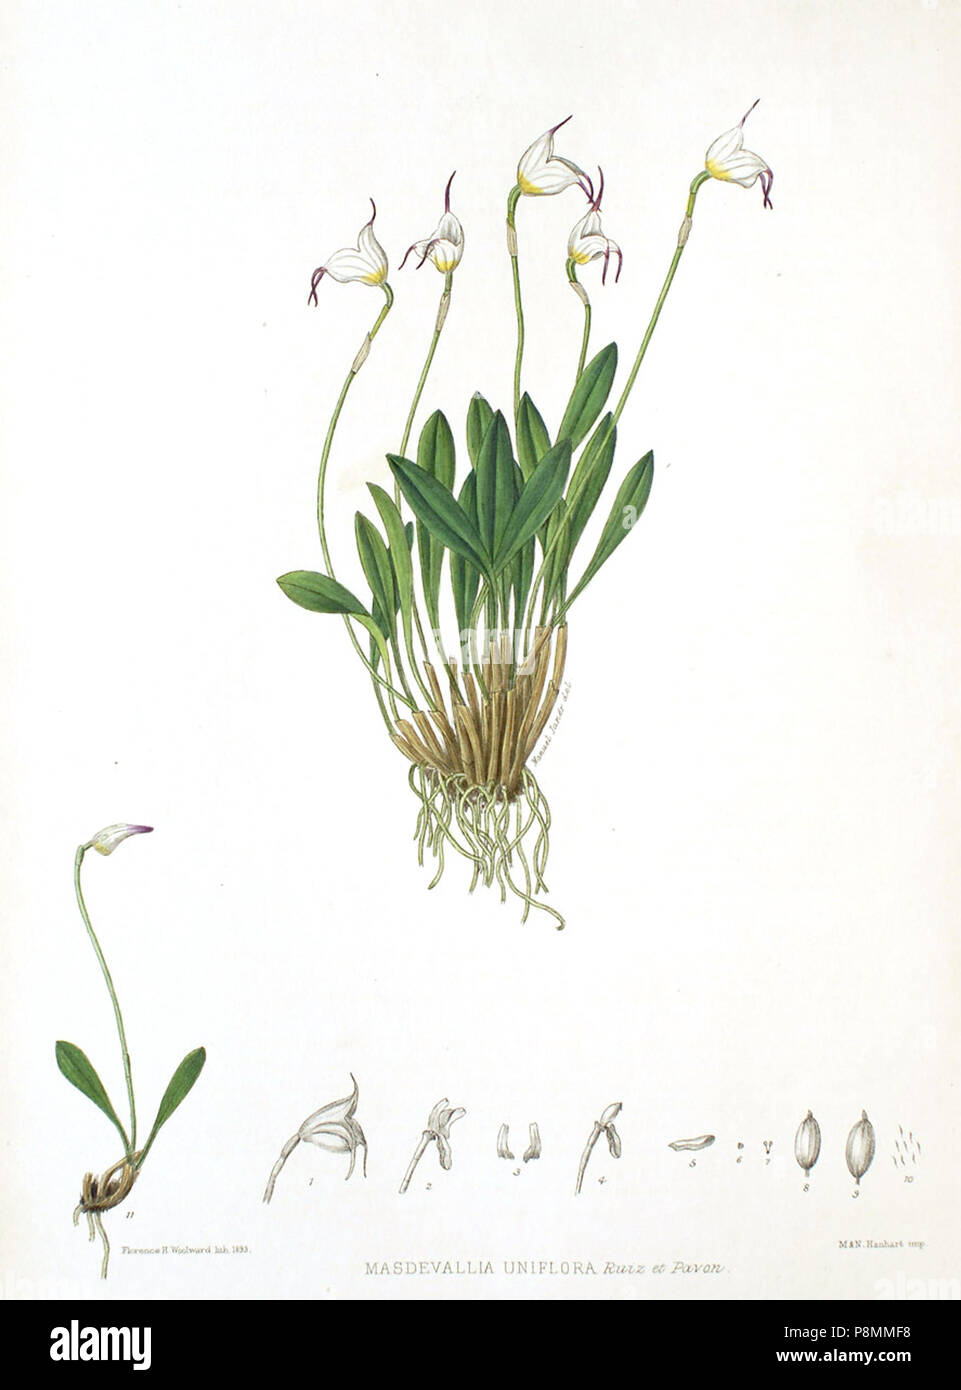 .   586 Woolward - The Genus Masdevallia - Masdevallia uniflora Stock Photo